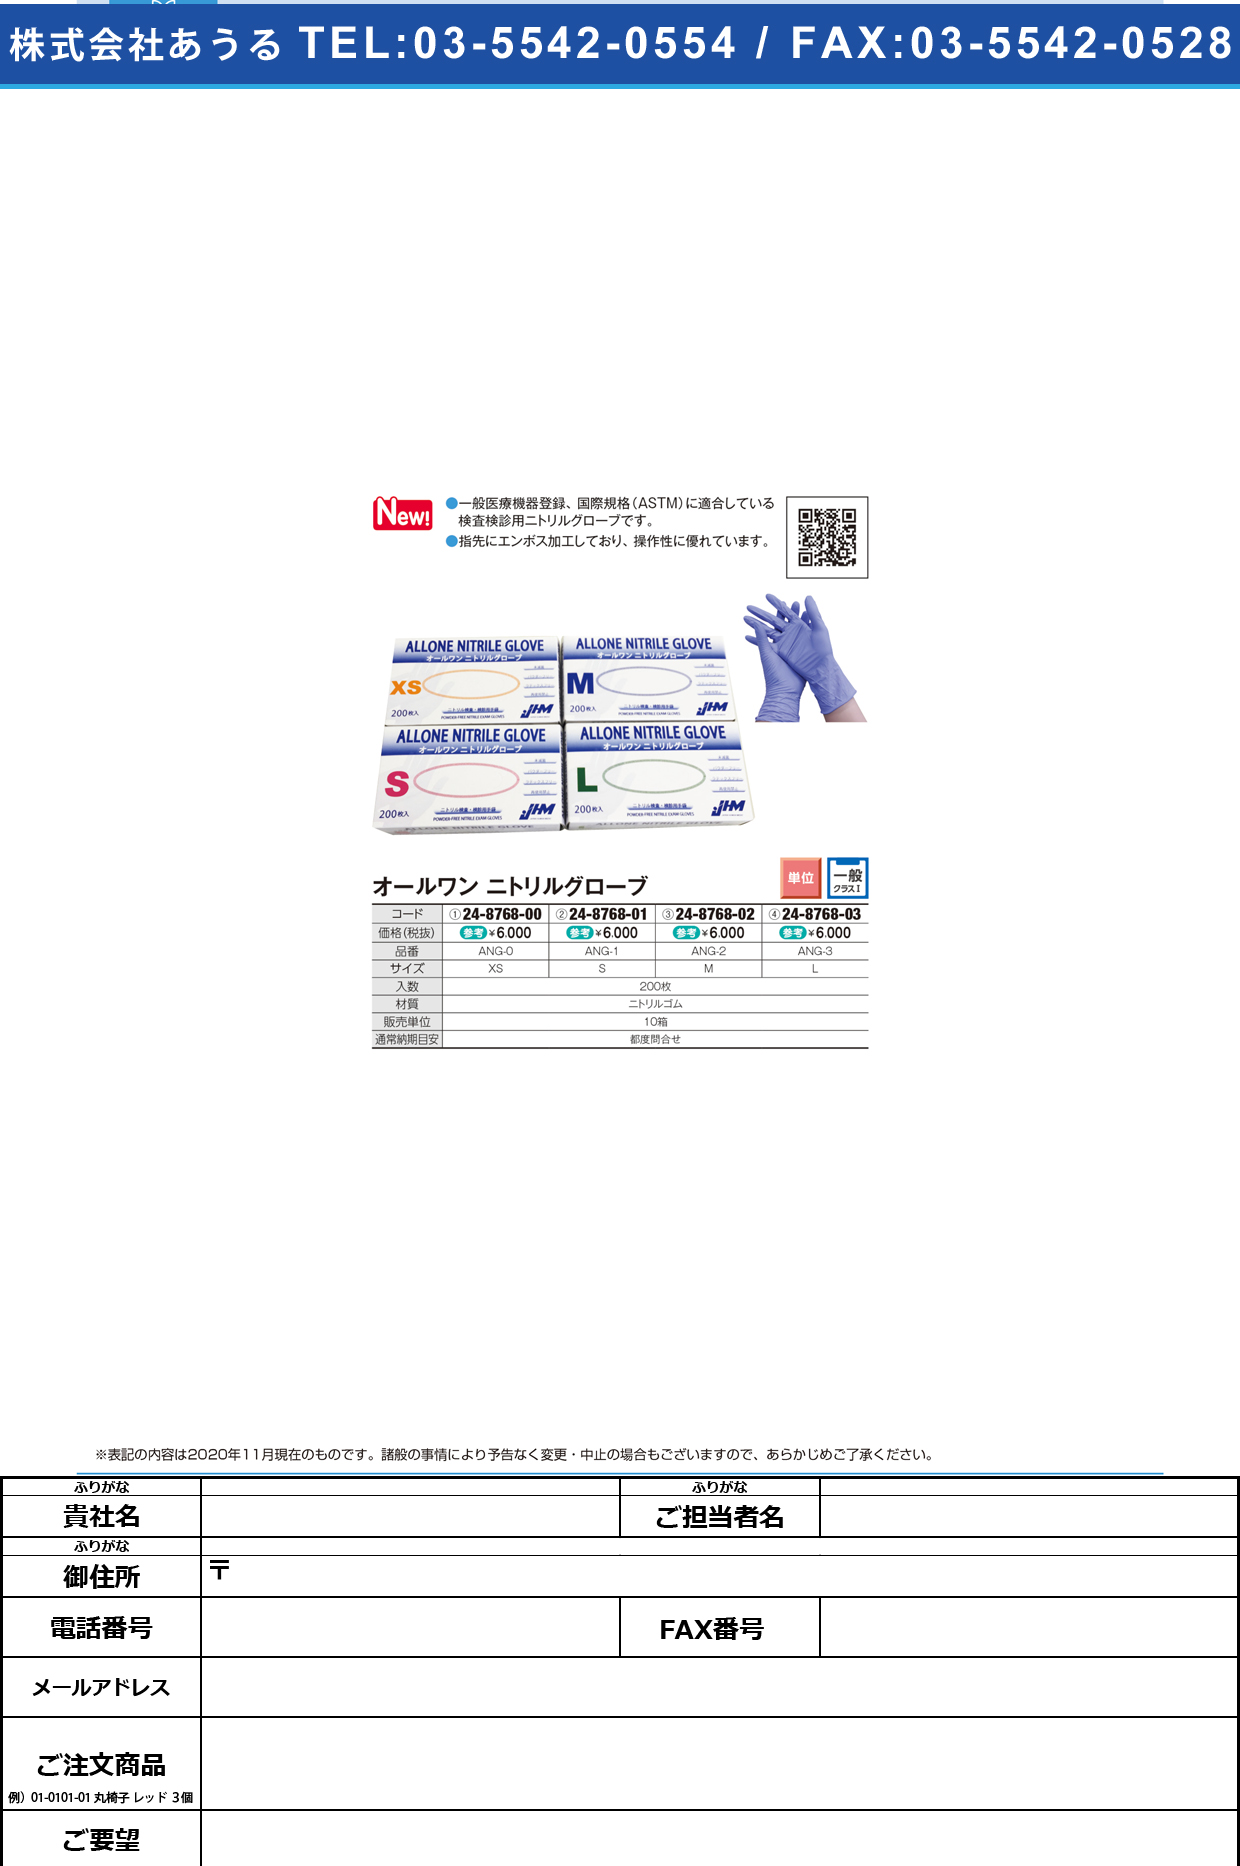 オールワンニトリルグローブ ANG-2(Mサイズ)200マイANG-2(Mｻｲｽﾞ)200ﾏｲ(24-8768-02)【日本ヒューマンメディク】(販売単位:10)